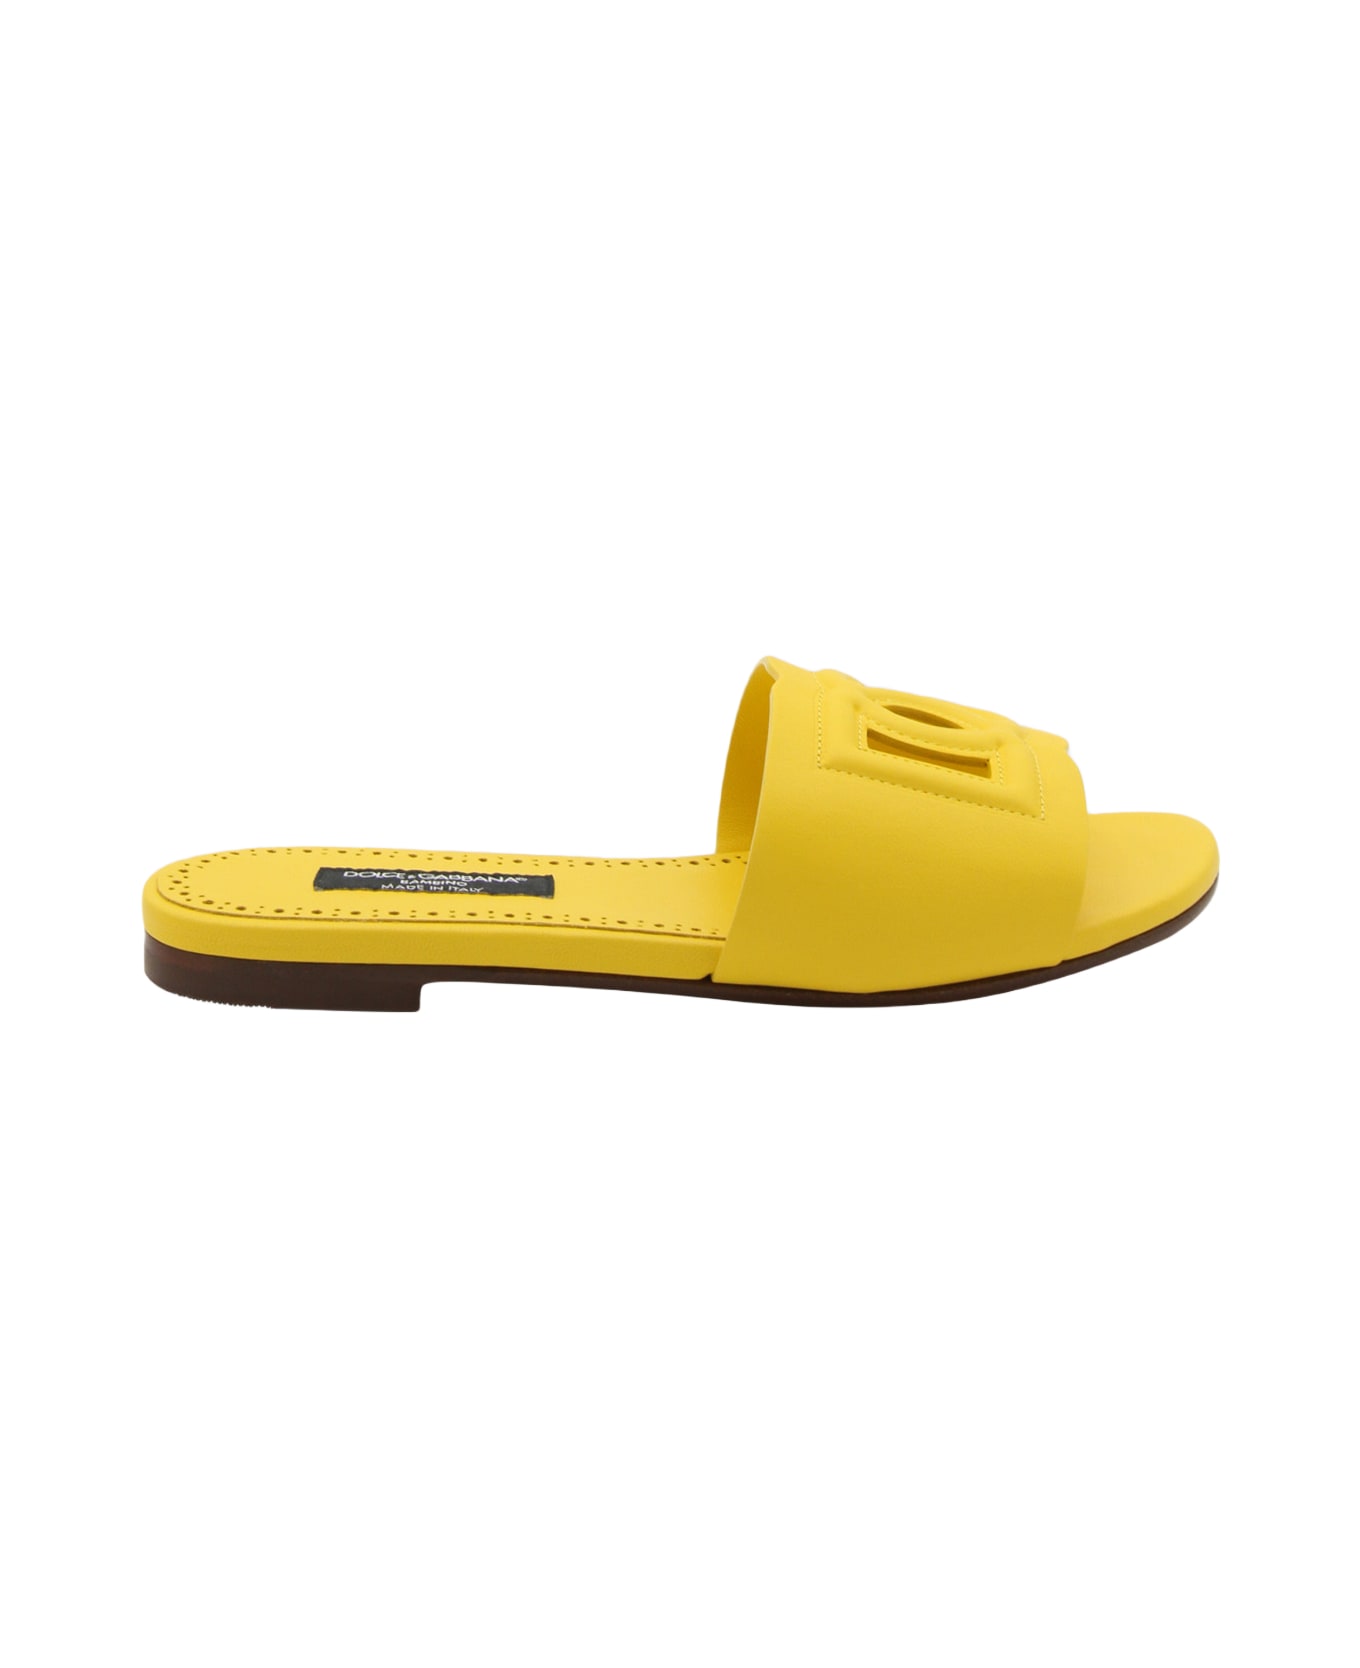 Neu Schuhe Sneaker NIKE Gyakusou Free 3.0 Flyknit Gr 43 9 Yellow Leather Flats - Yellow